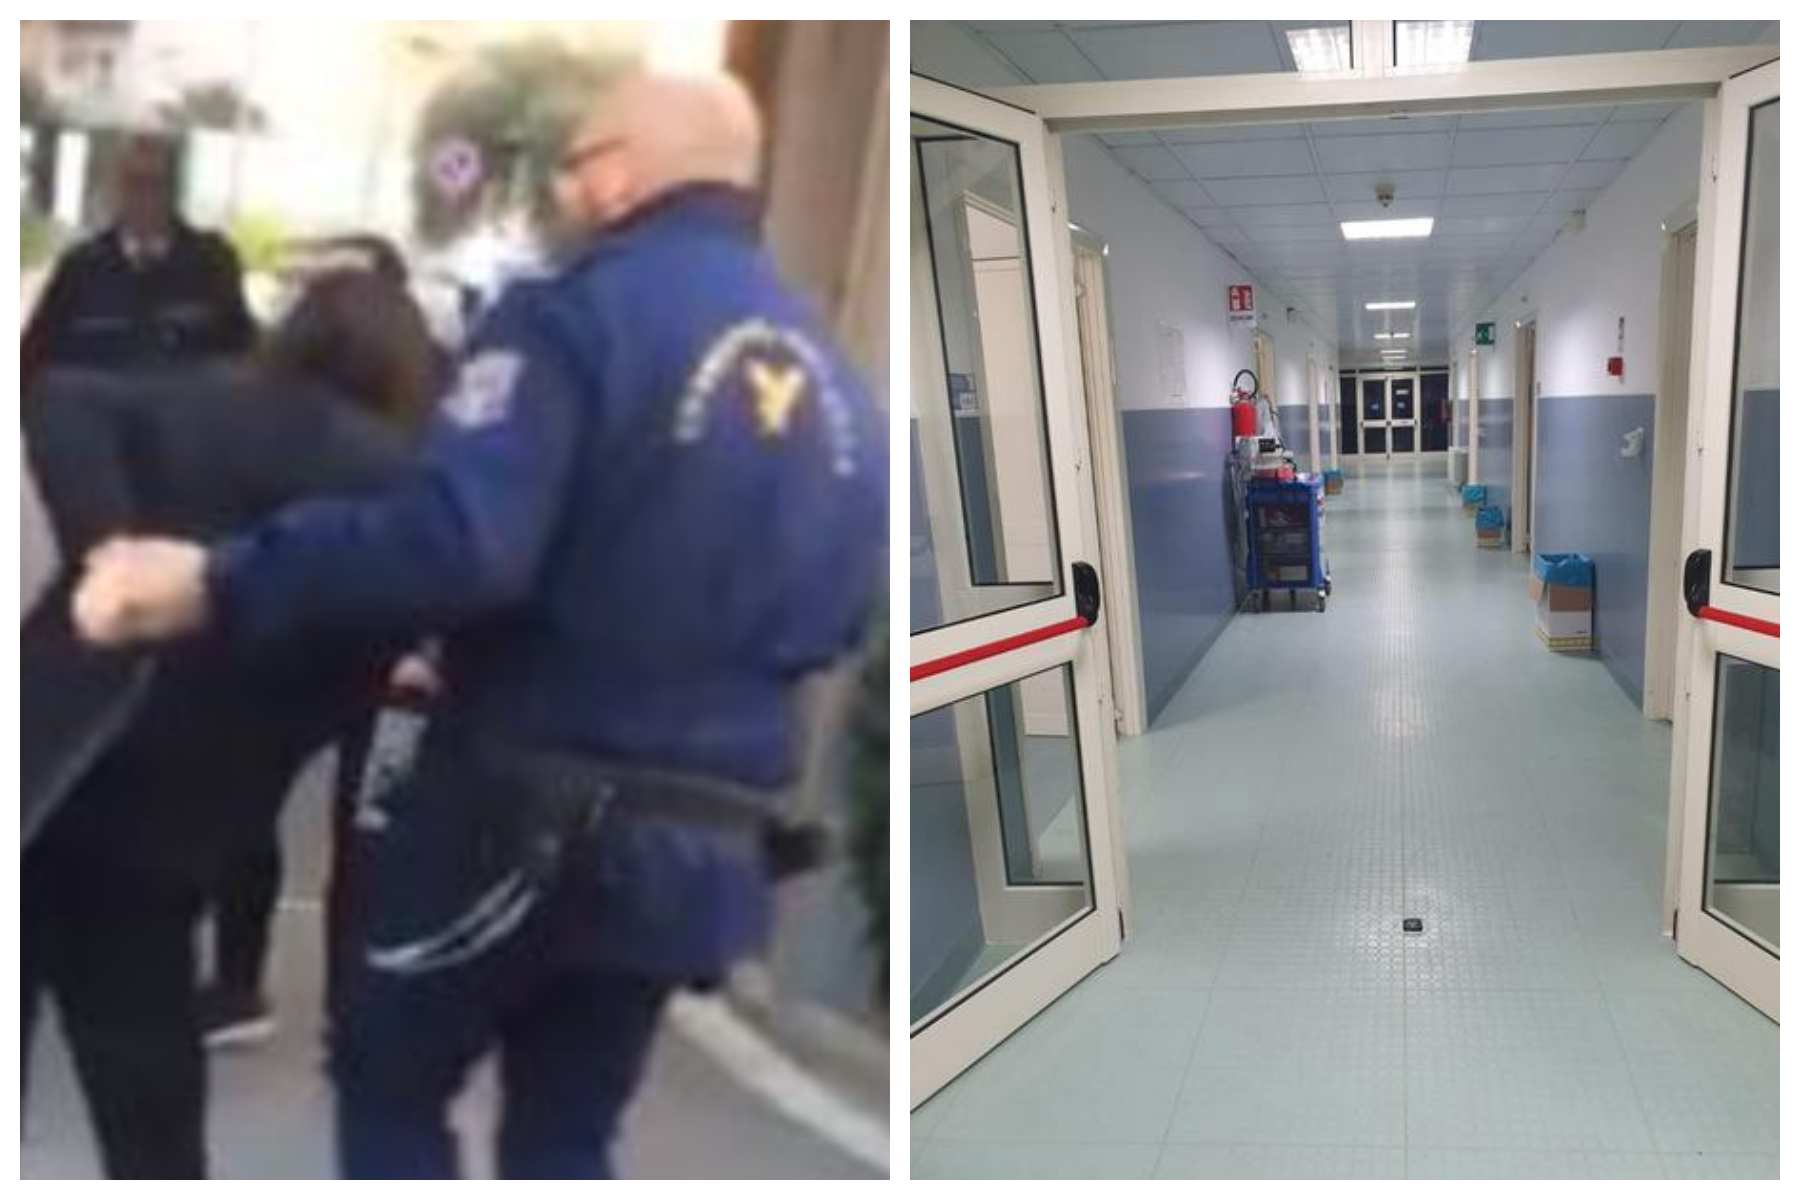 Paura in un ospedale napoletano, vigilante minacciato e picchiato dal figlio di una paziente